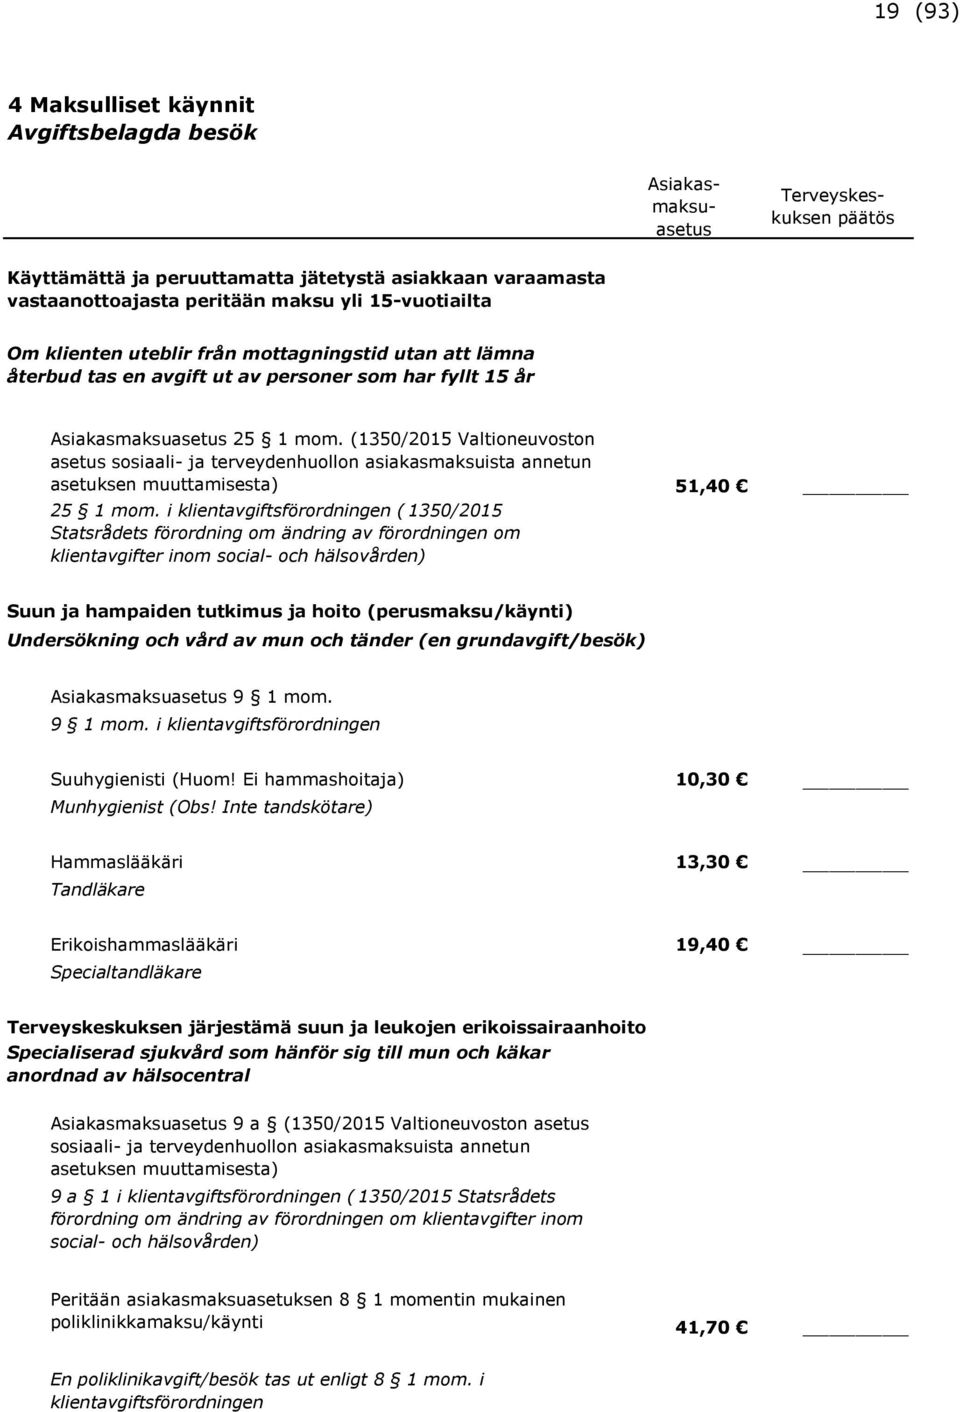 (1350/2015 Valtioneuvoston asetus sosiaali- ja terveydenhuollon asiakasmaksuista annetun asetuksen muuttamisesta) 51,40 25 1 mom.